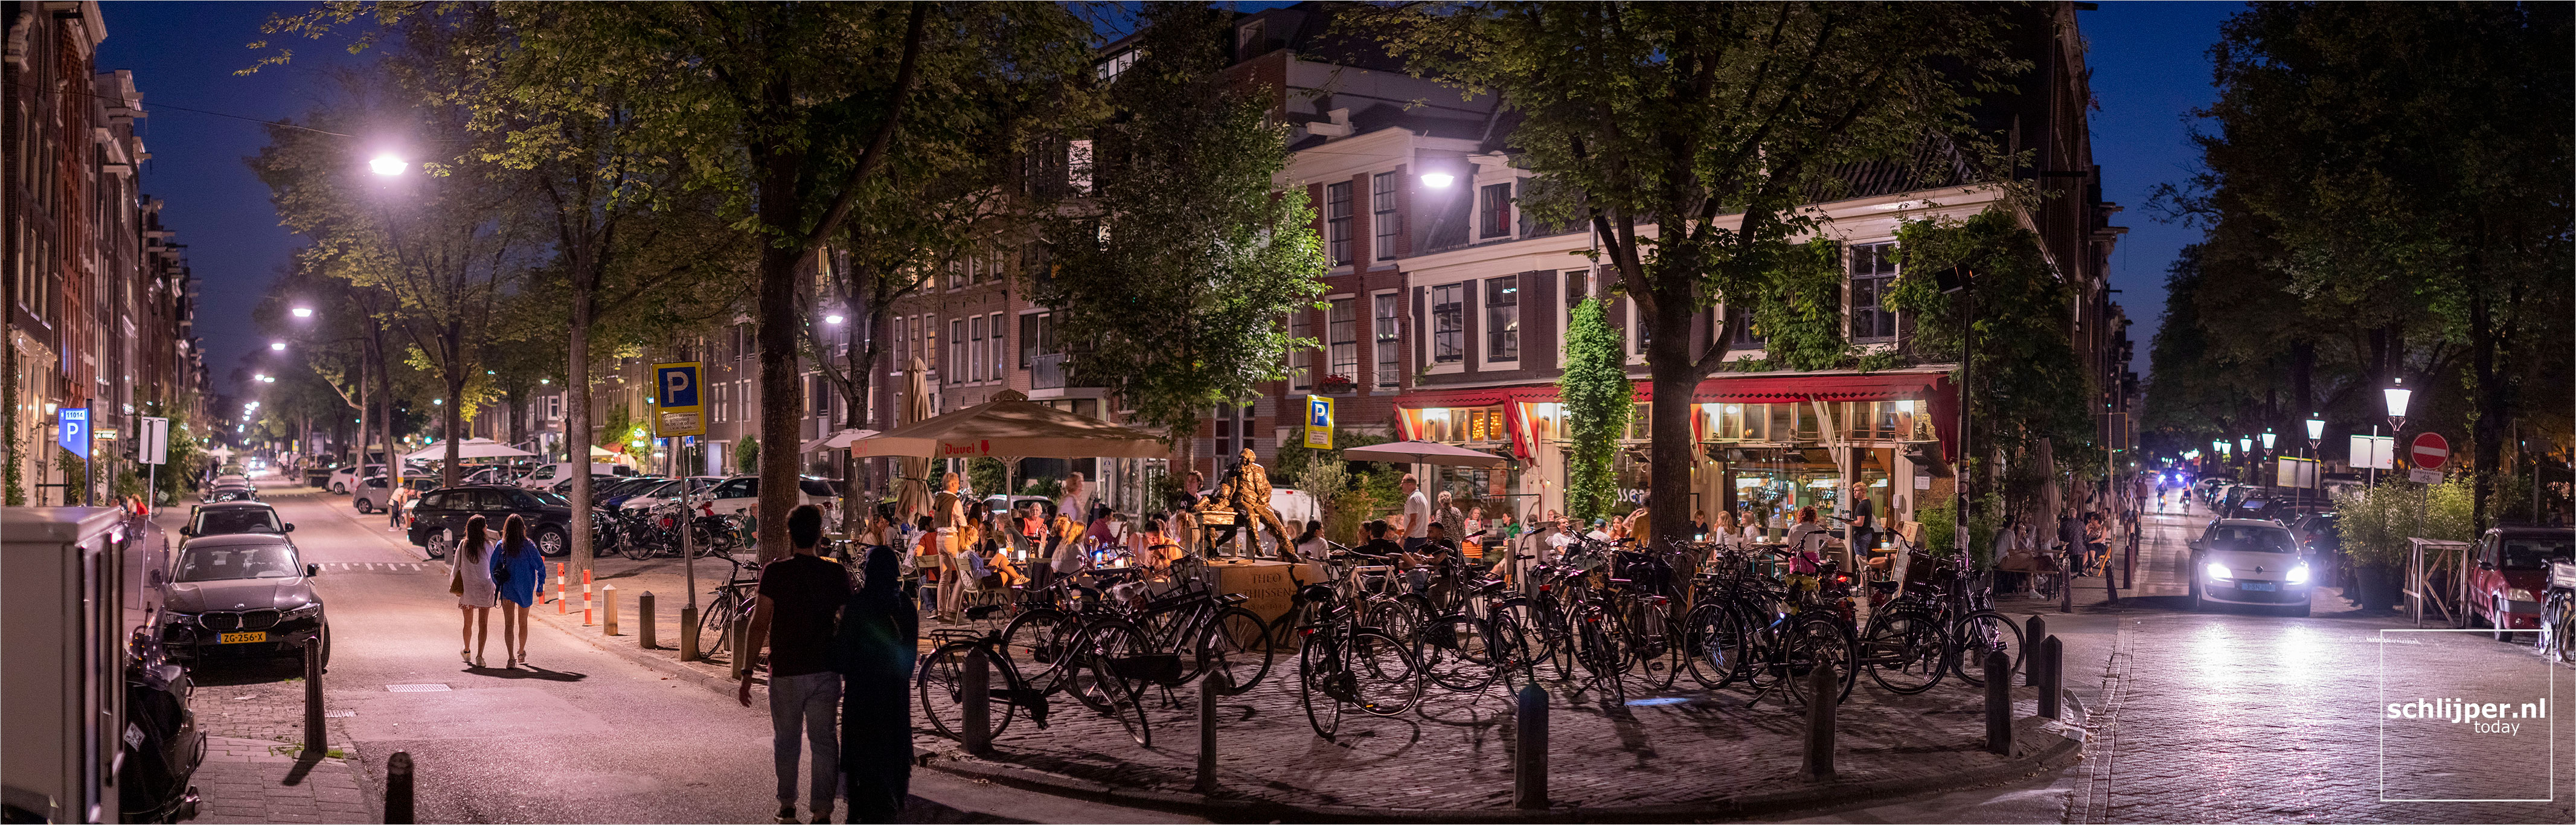 The Netherlands, Amsterdam, 8 september 2021